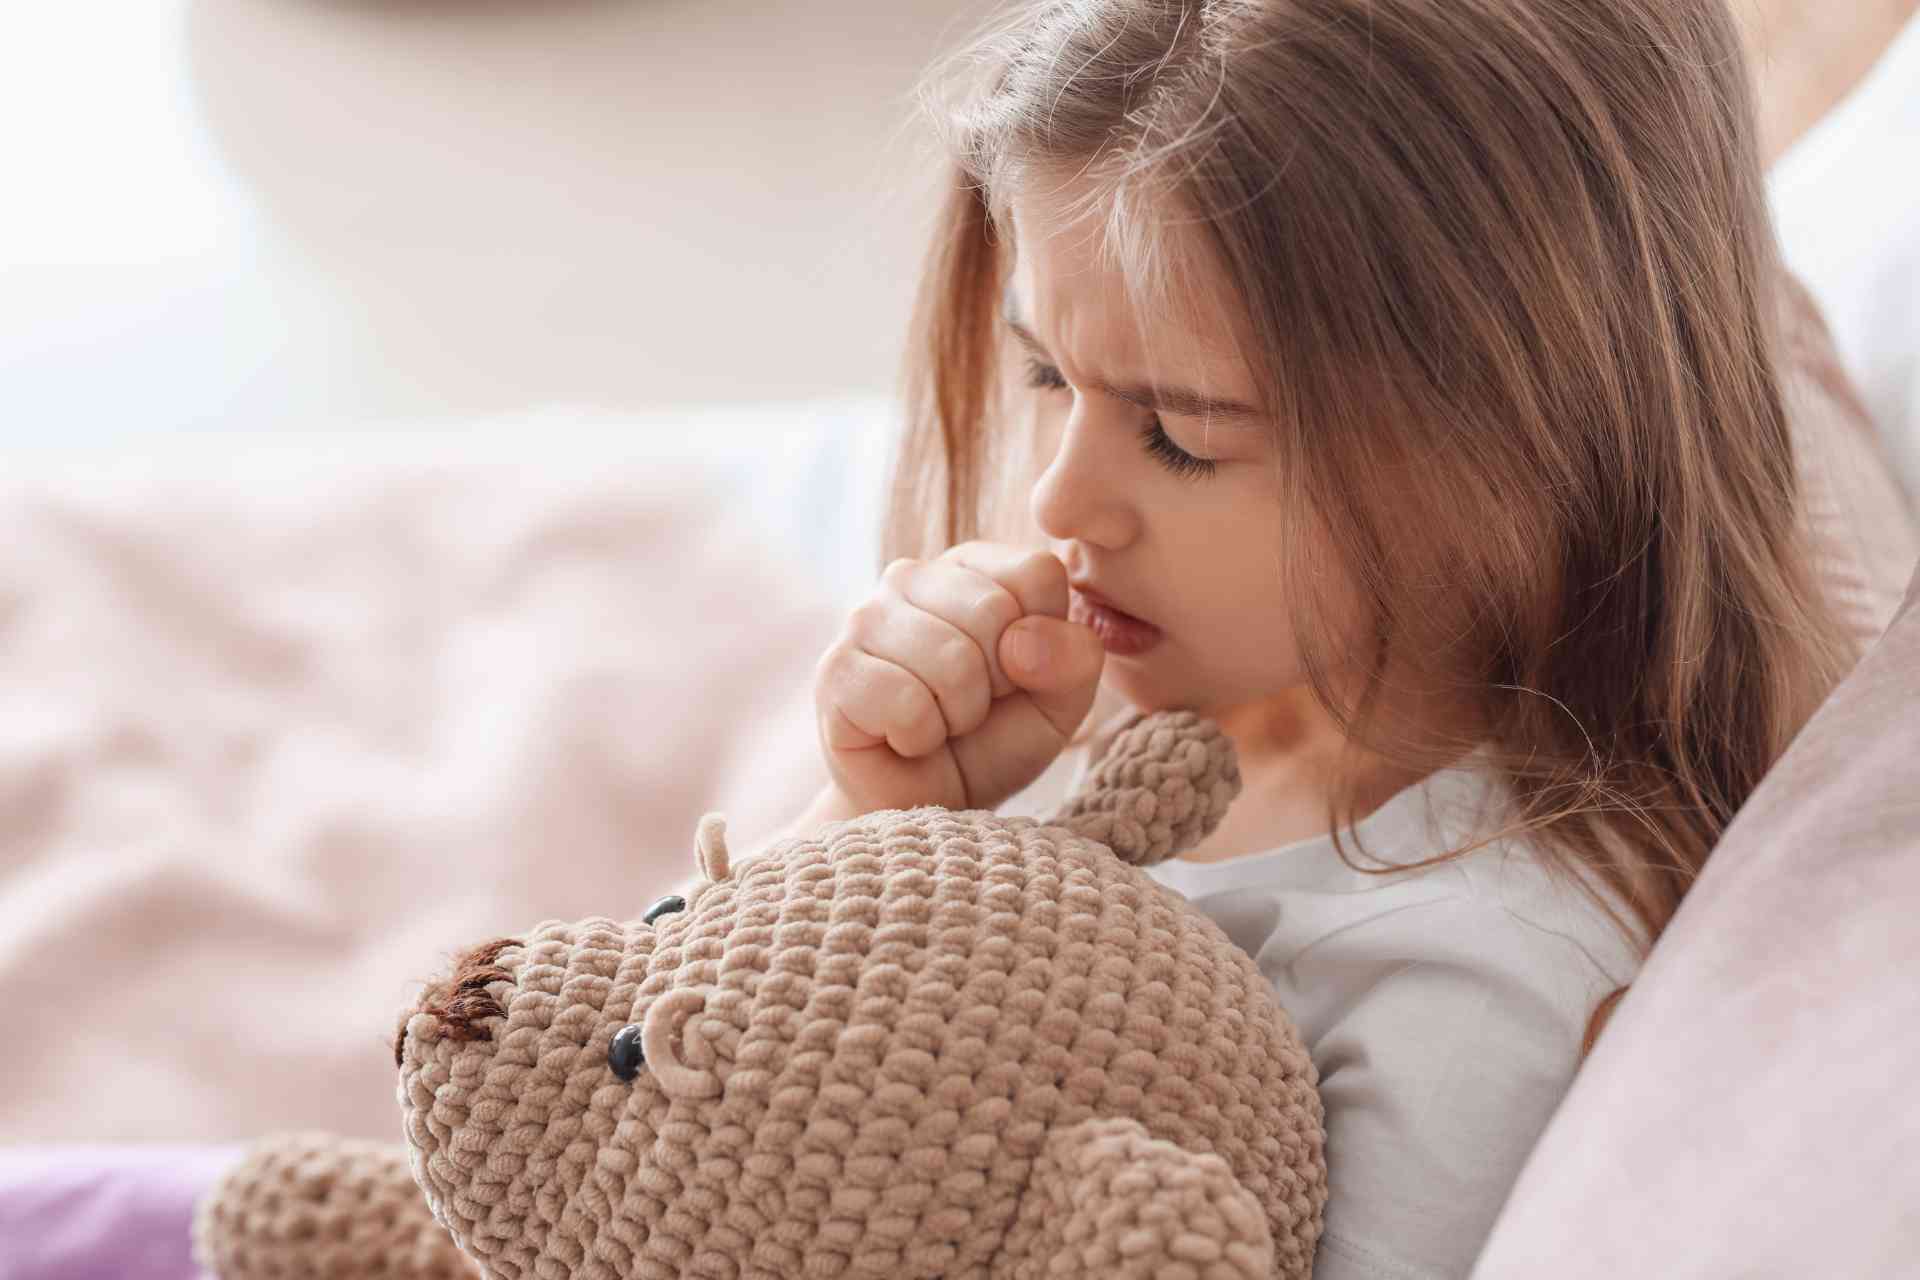 Tosse cronica nei bambini: sotto accusa il microbiota delle vie respiratorie 